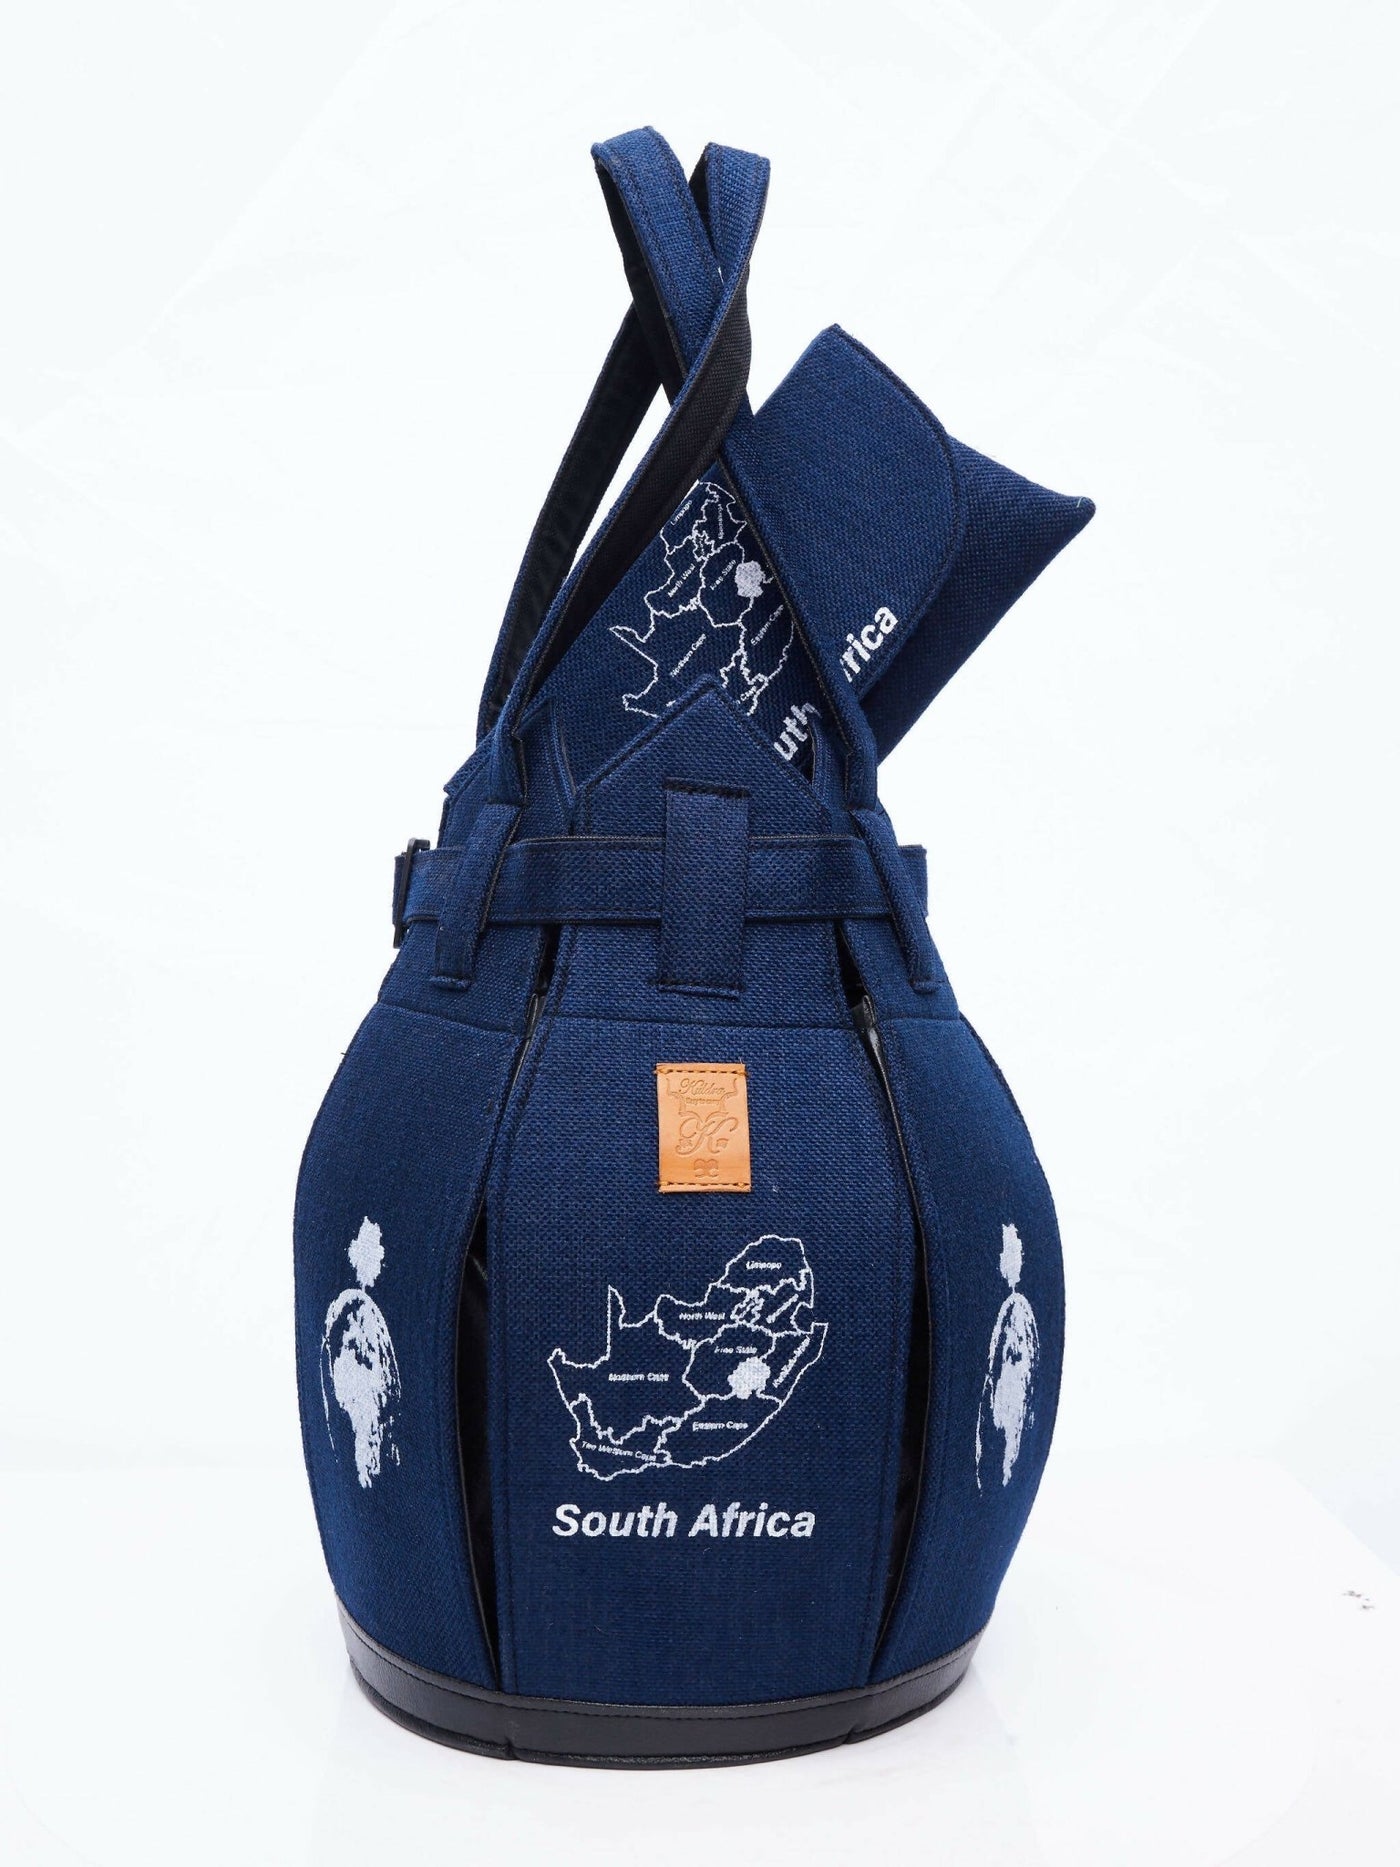 Kuldra Pineapple Spike Handbag South Africa - Blue - Shopzetu